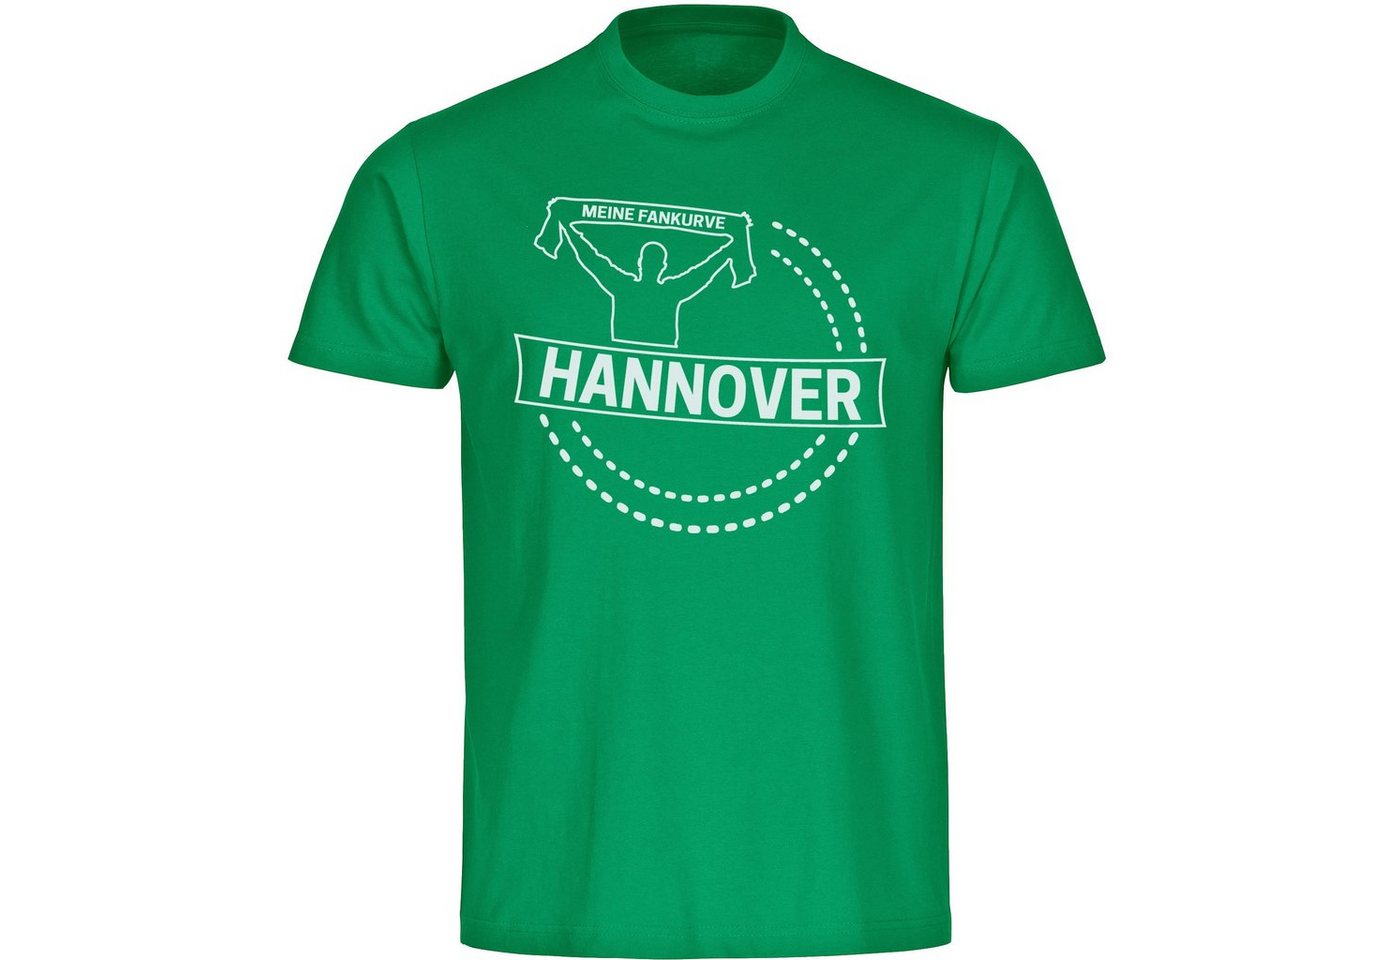 multifanshop T-Shirt Kinder Hannover - Meine Fankurve - Boy Girl von multifanshop